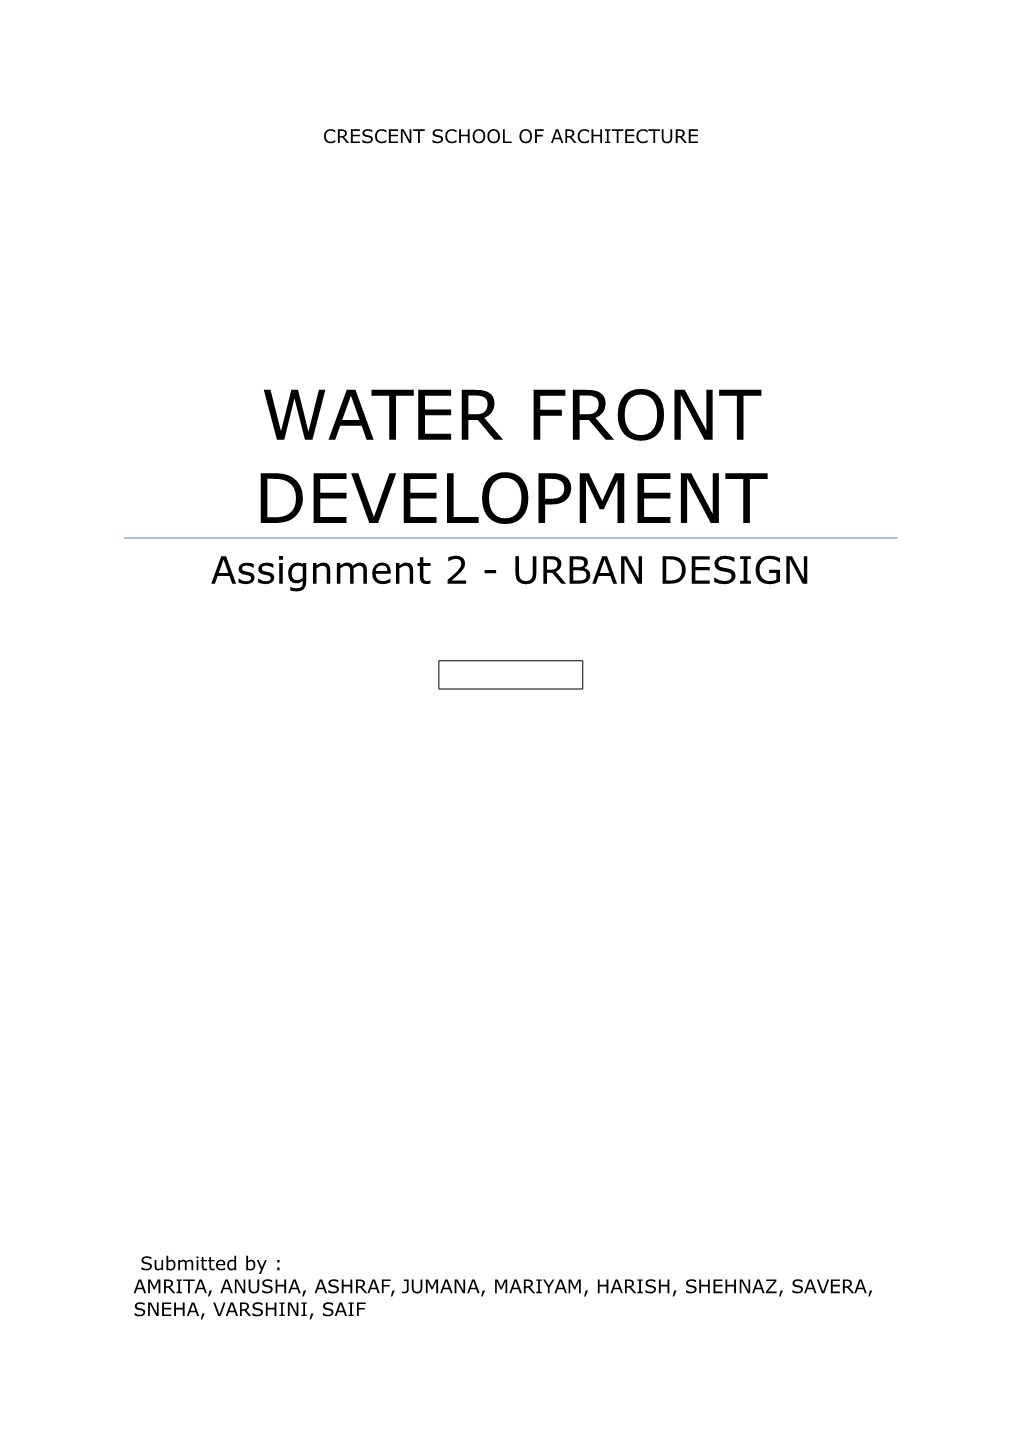 WATER FRONT DEVELOPMENT Assignment 2 - URBAN DESIGN